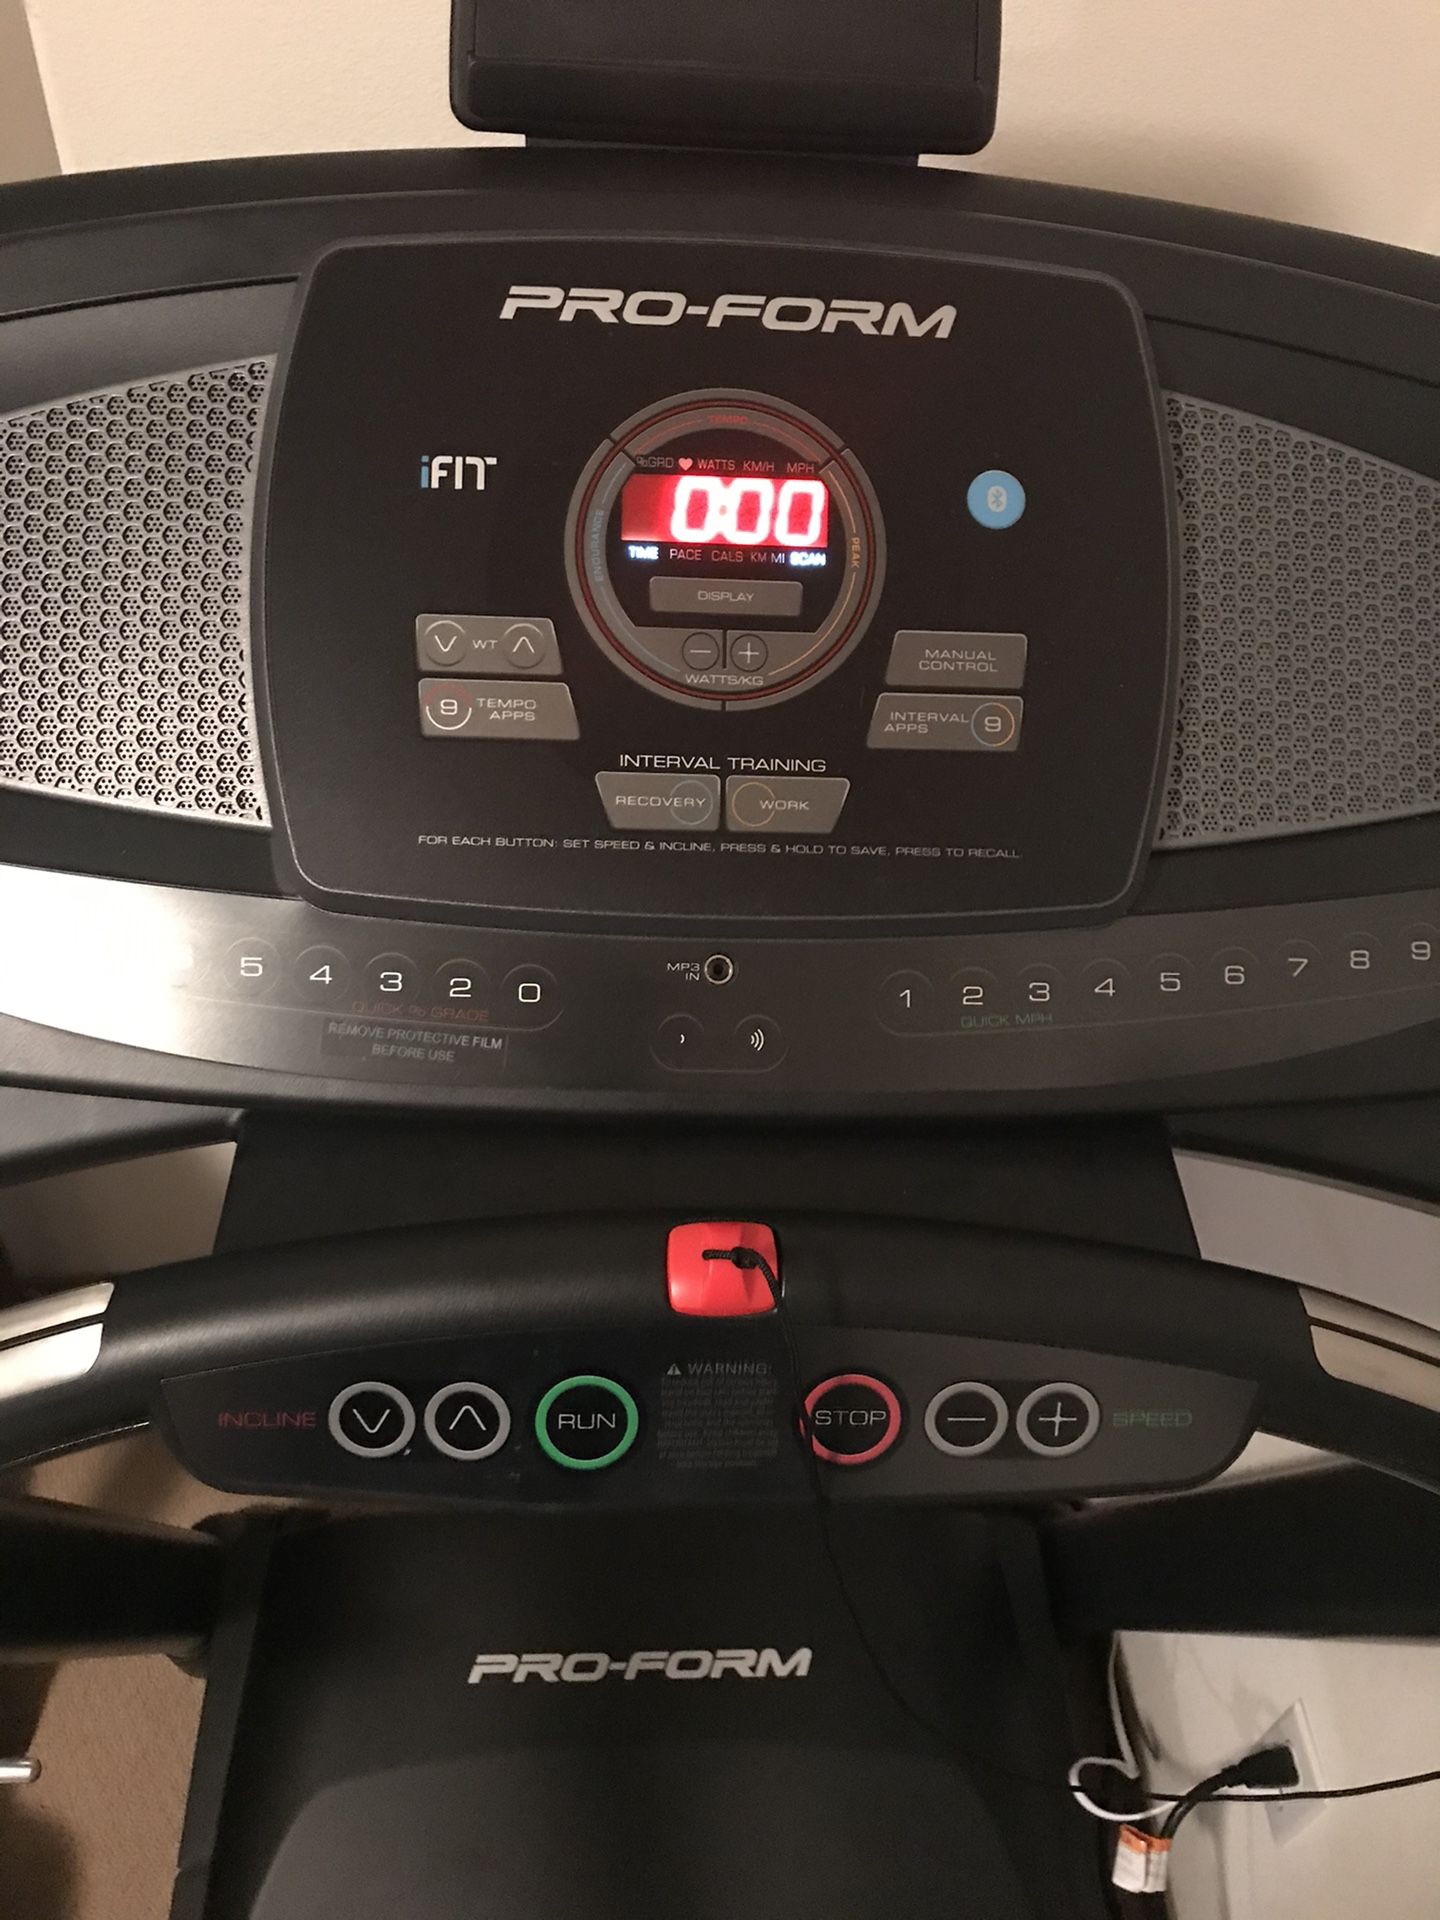 Pro-Form ifit treadmill like new!!!!